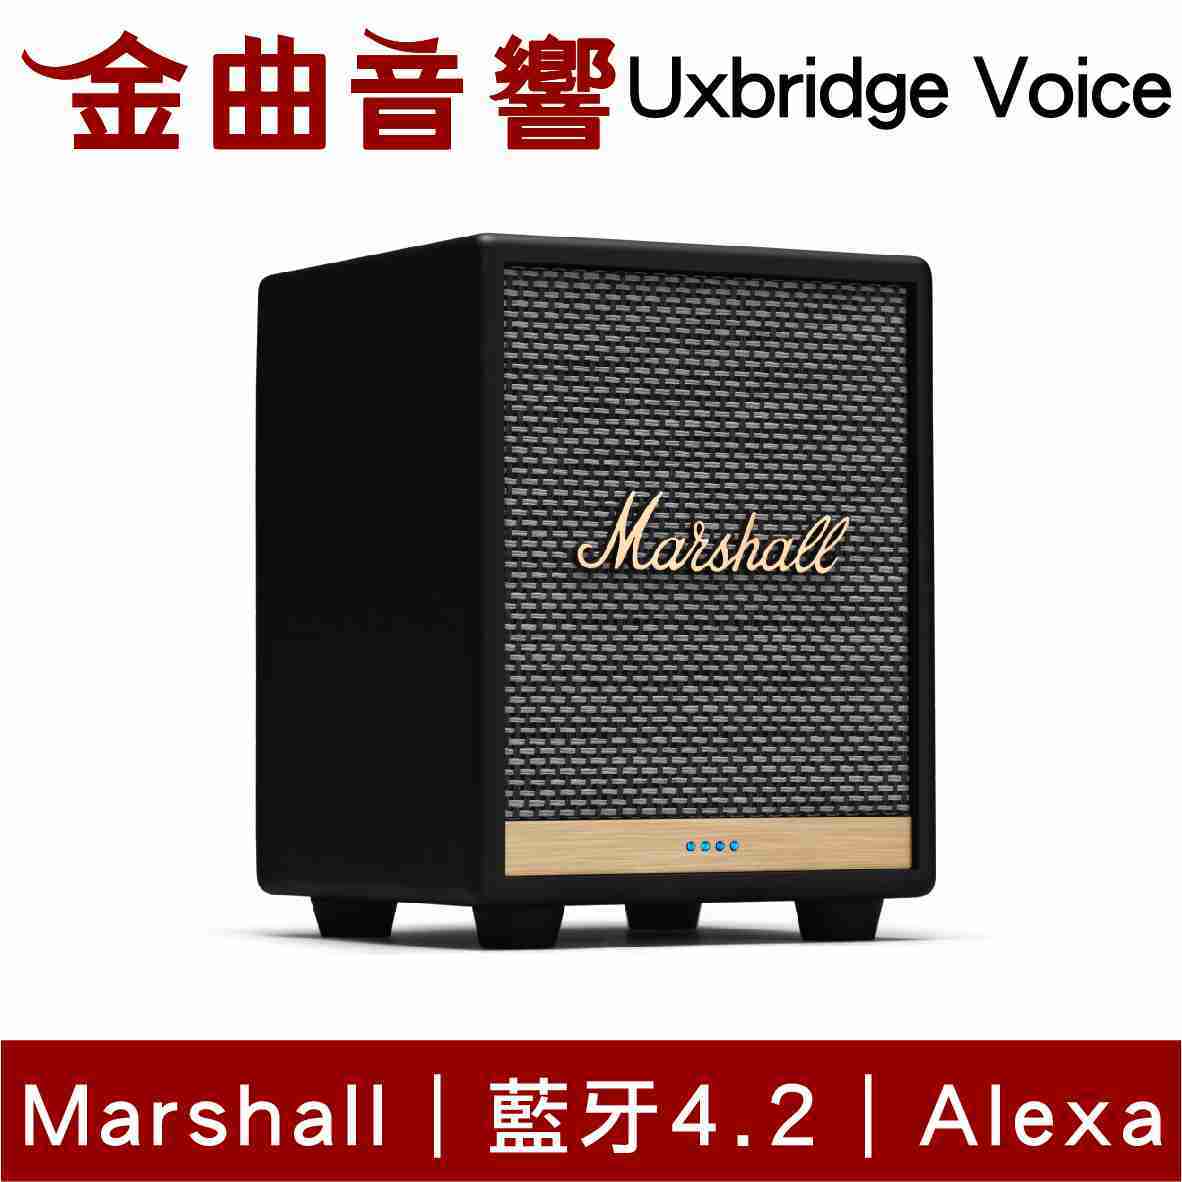 Marshall 馬歇爾 Uxbridge Voice 黑色 雙麥克風 藍芽 無線 喇叭 | 金曲音響